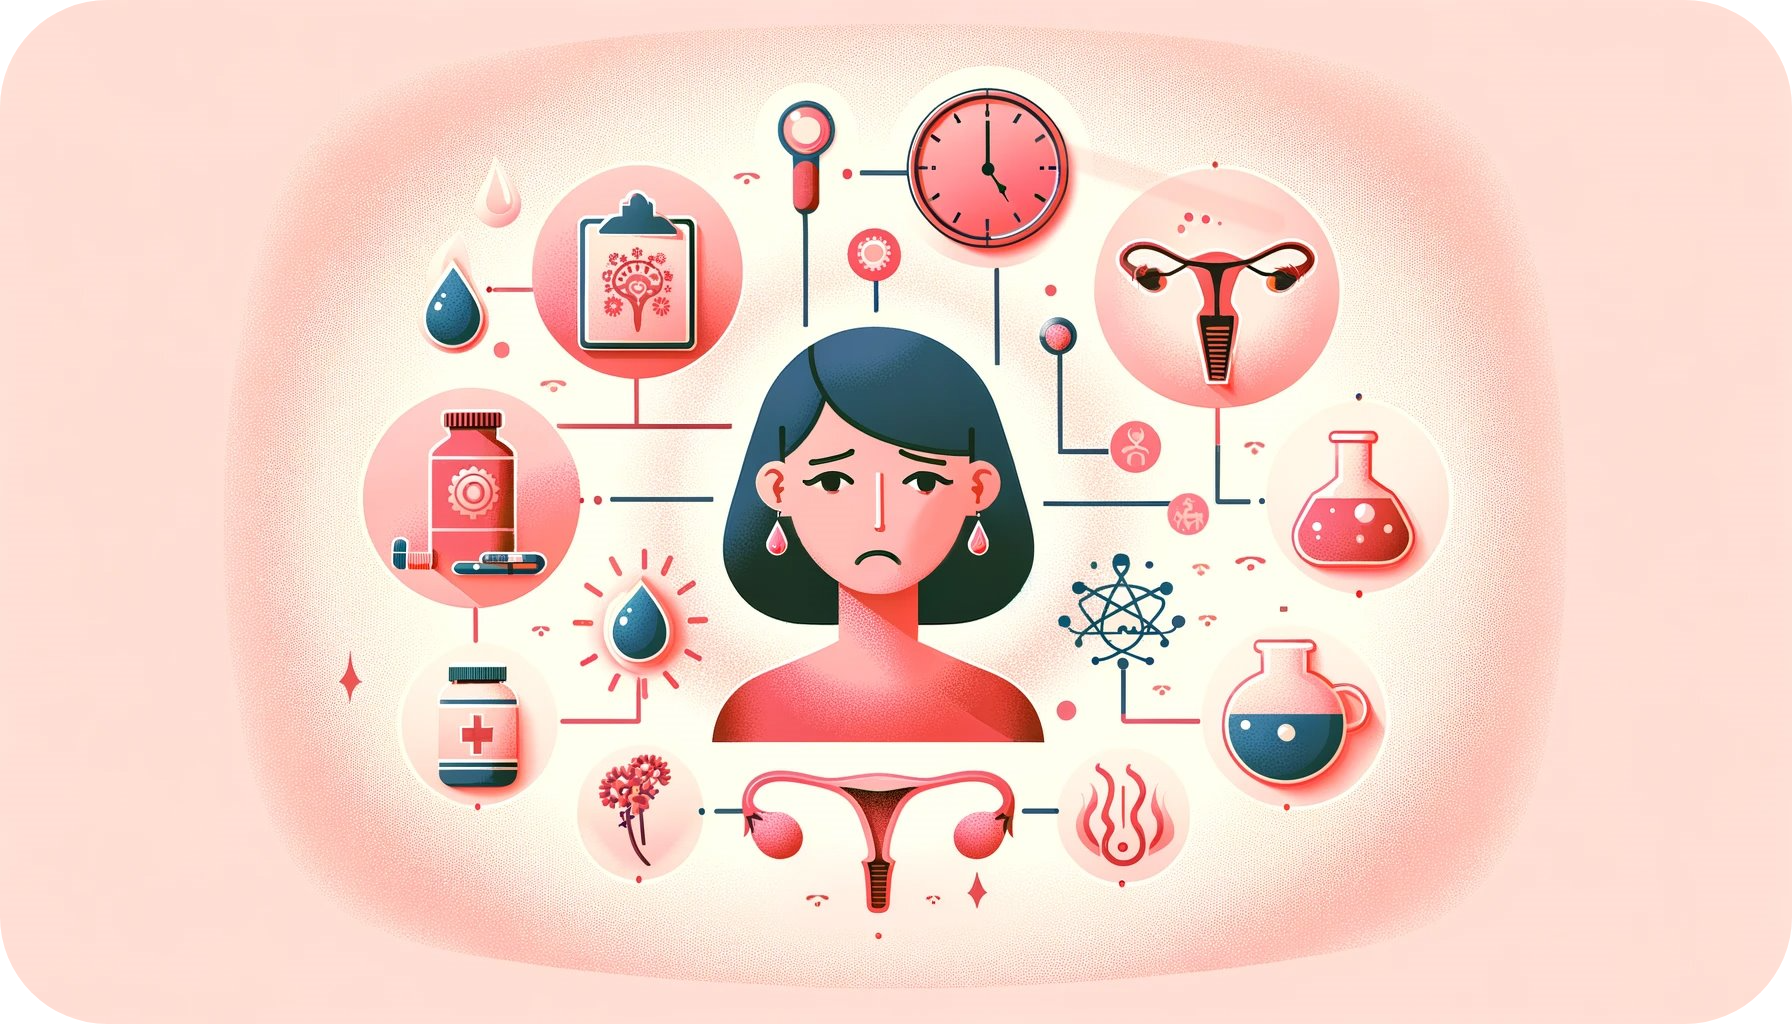 Symptomy menopauzy